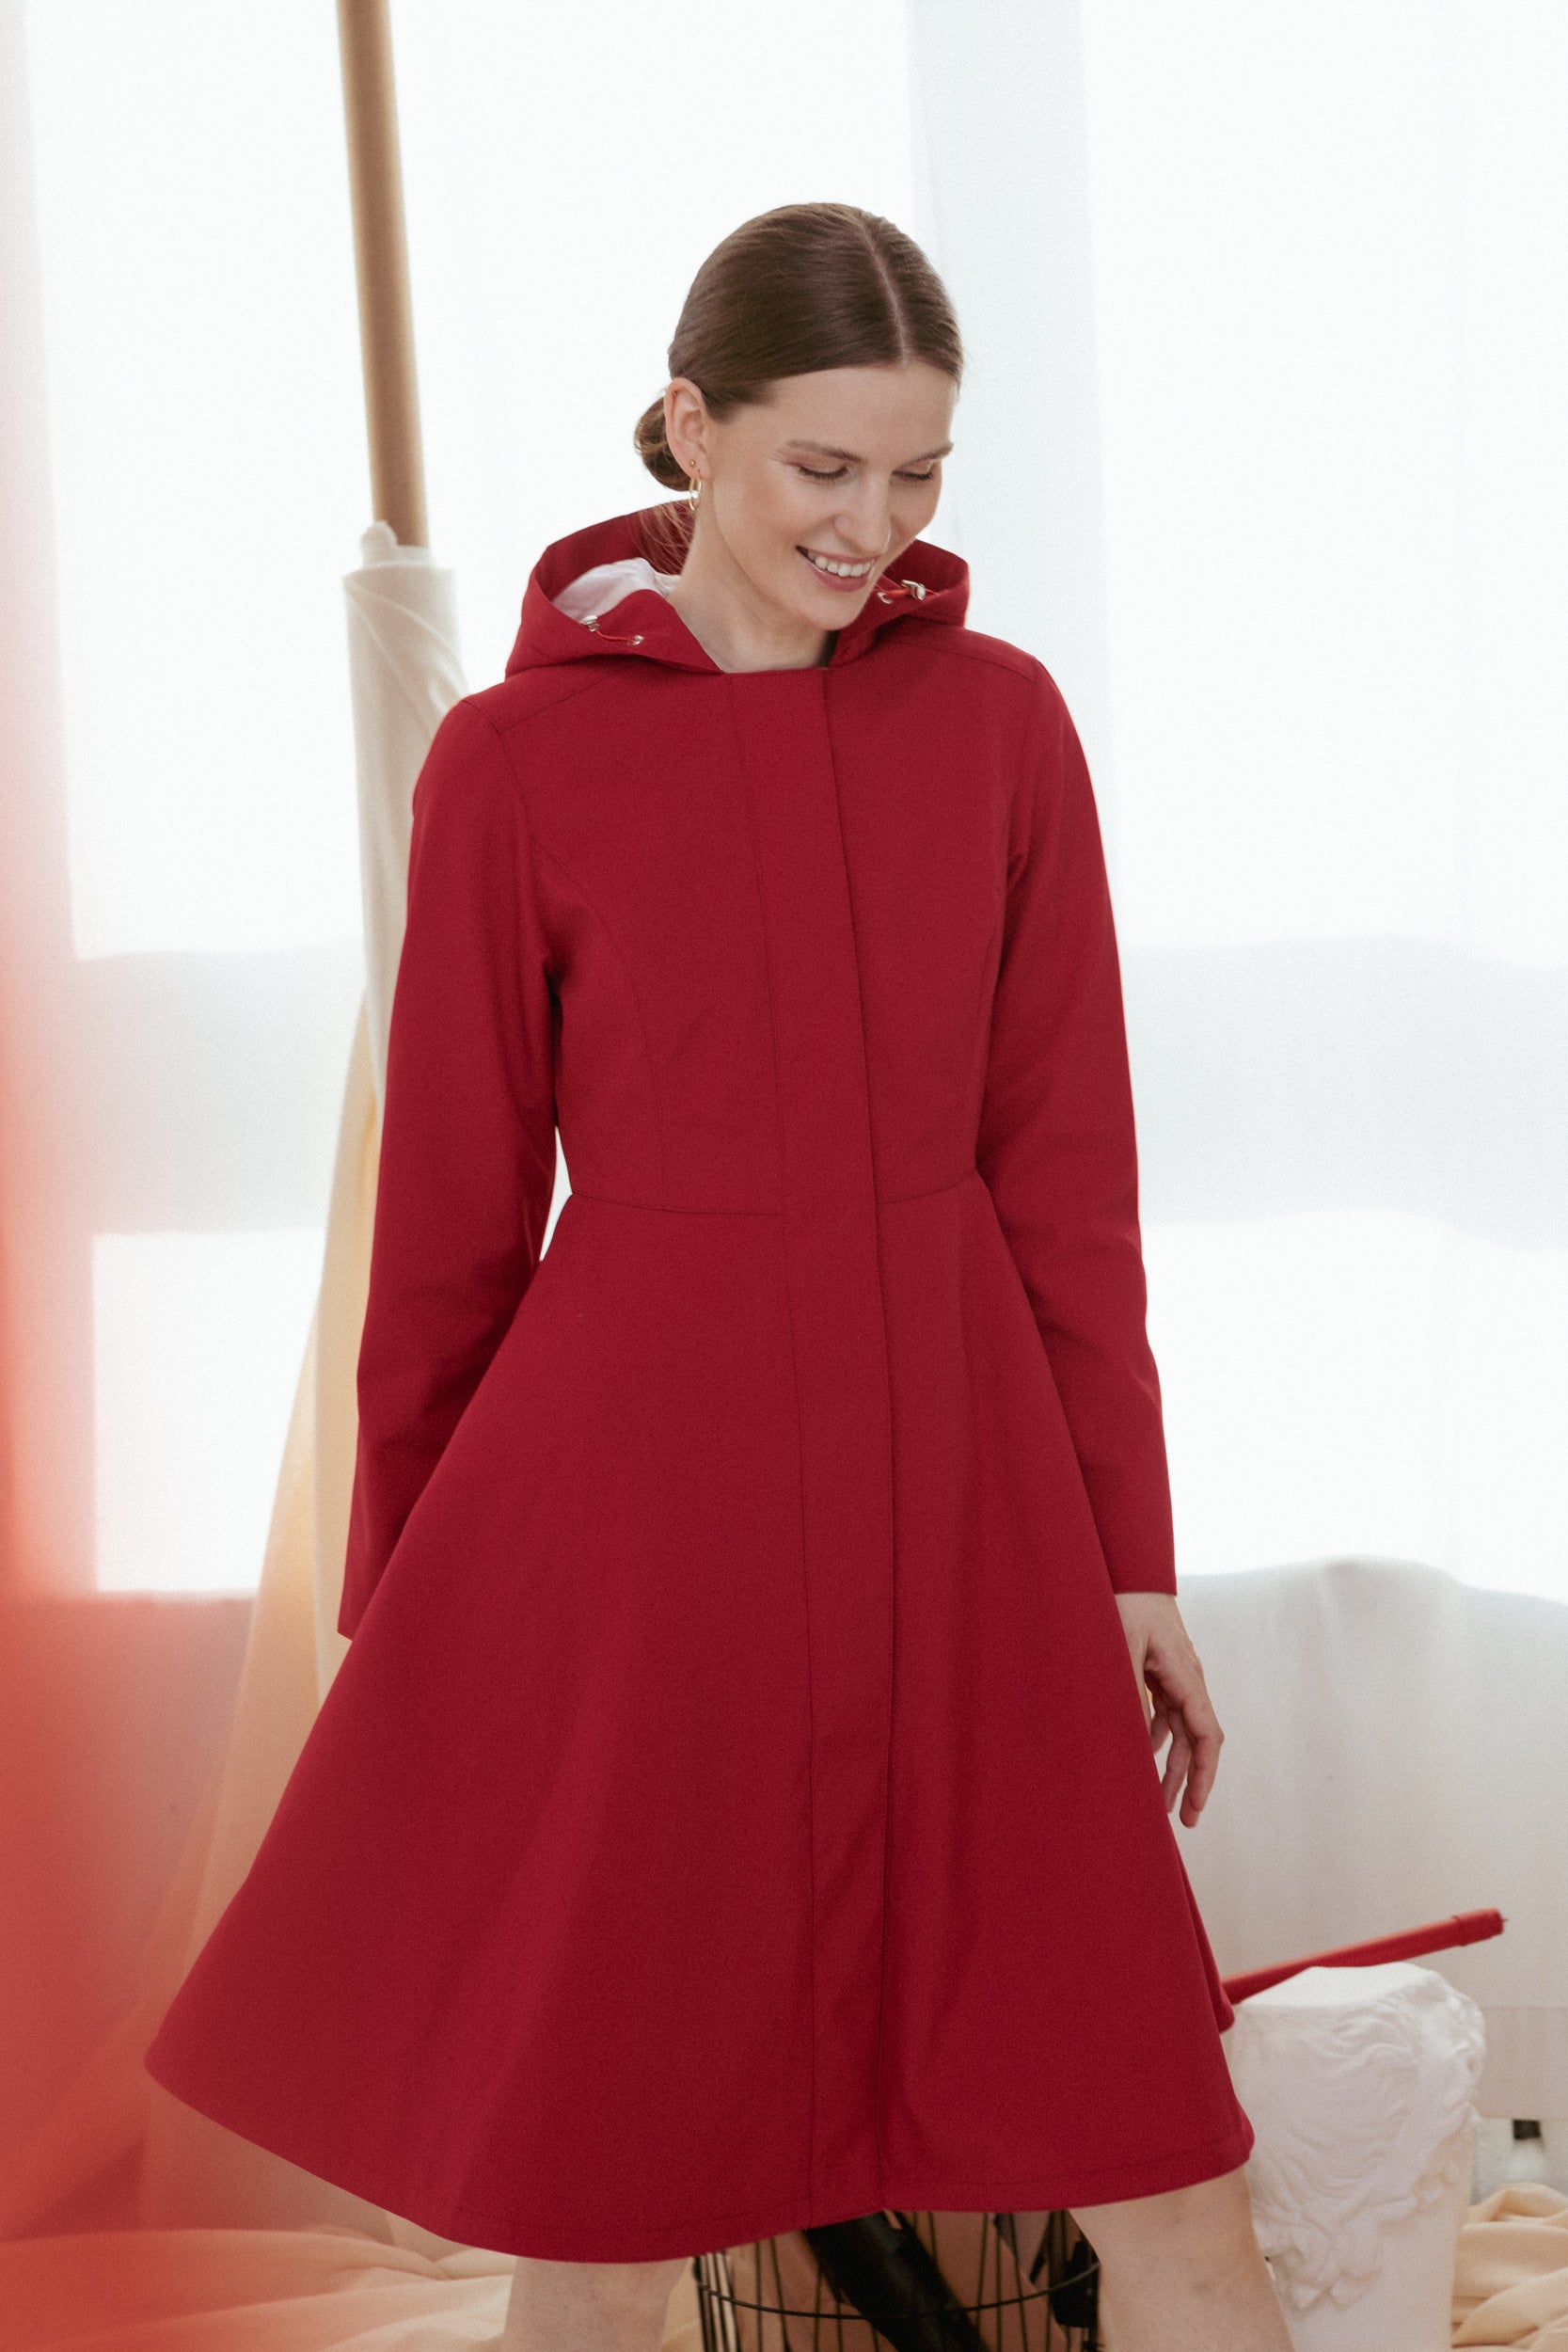 Waterproof Dark Red Coat for Women